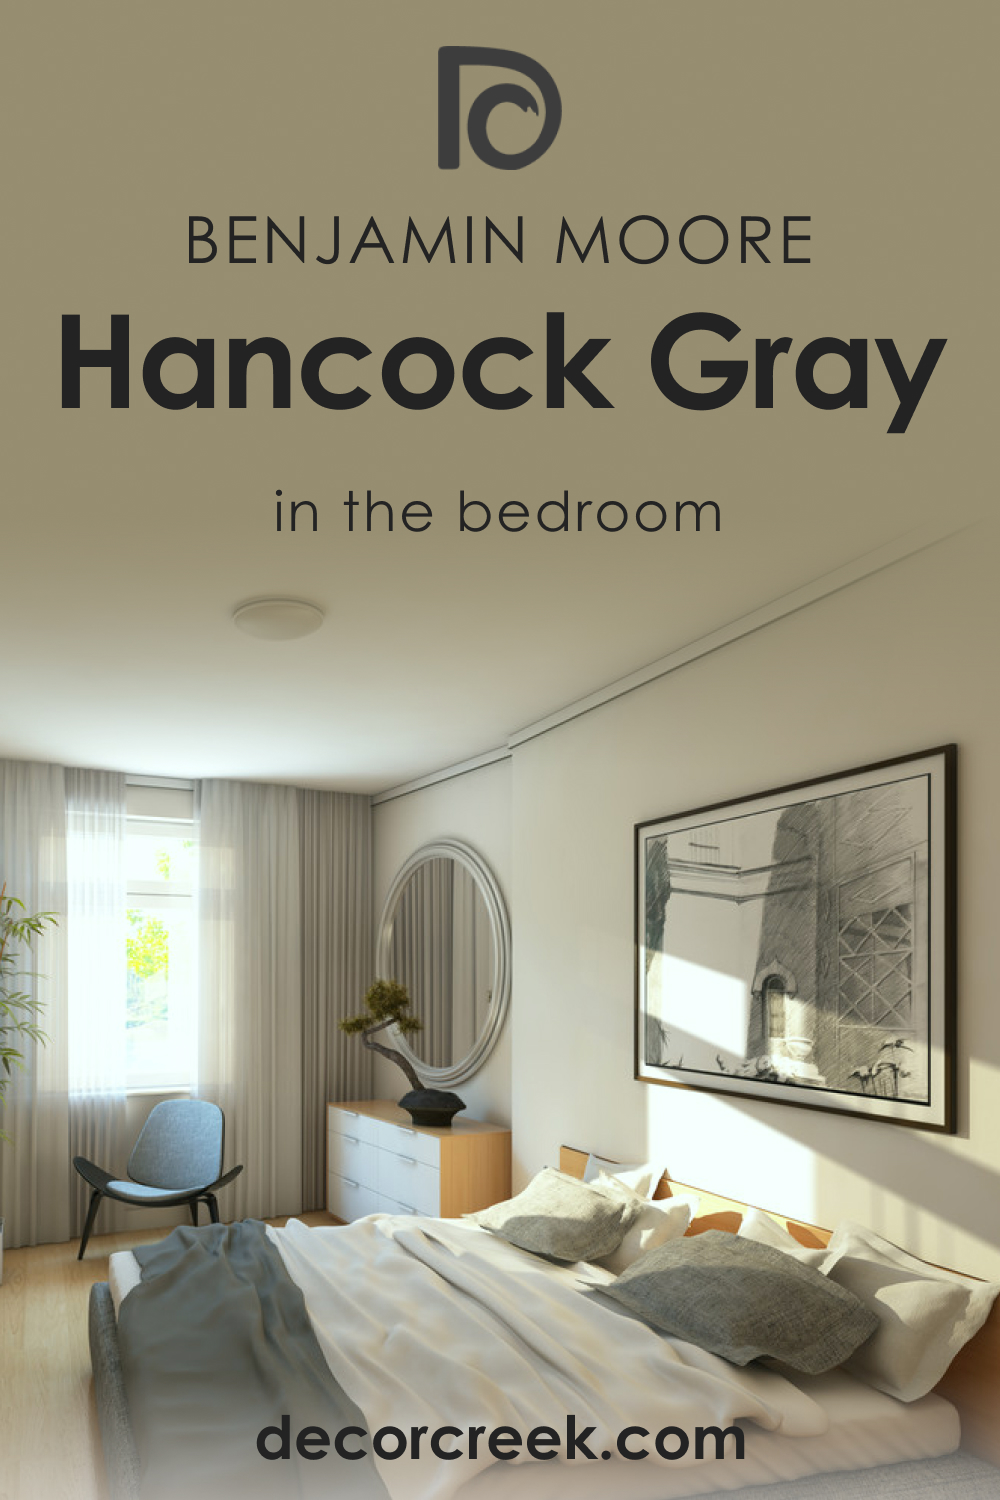 Hancock Gray HC-97 in the Bedroom